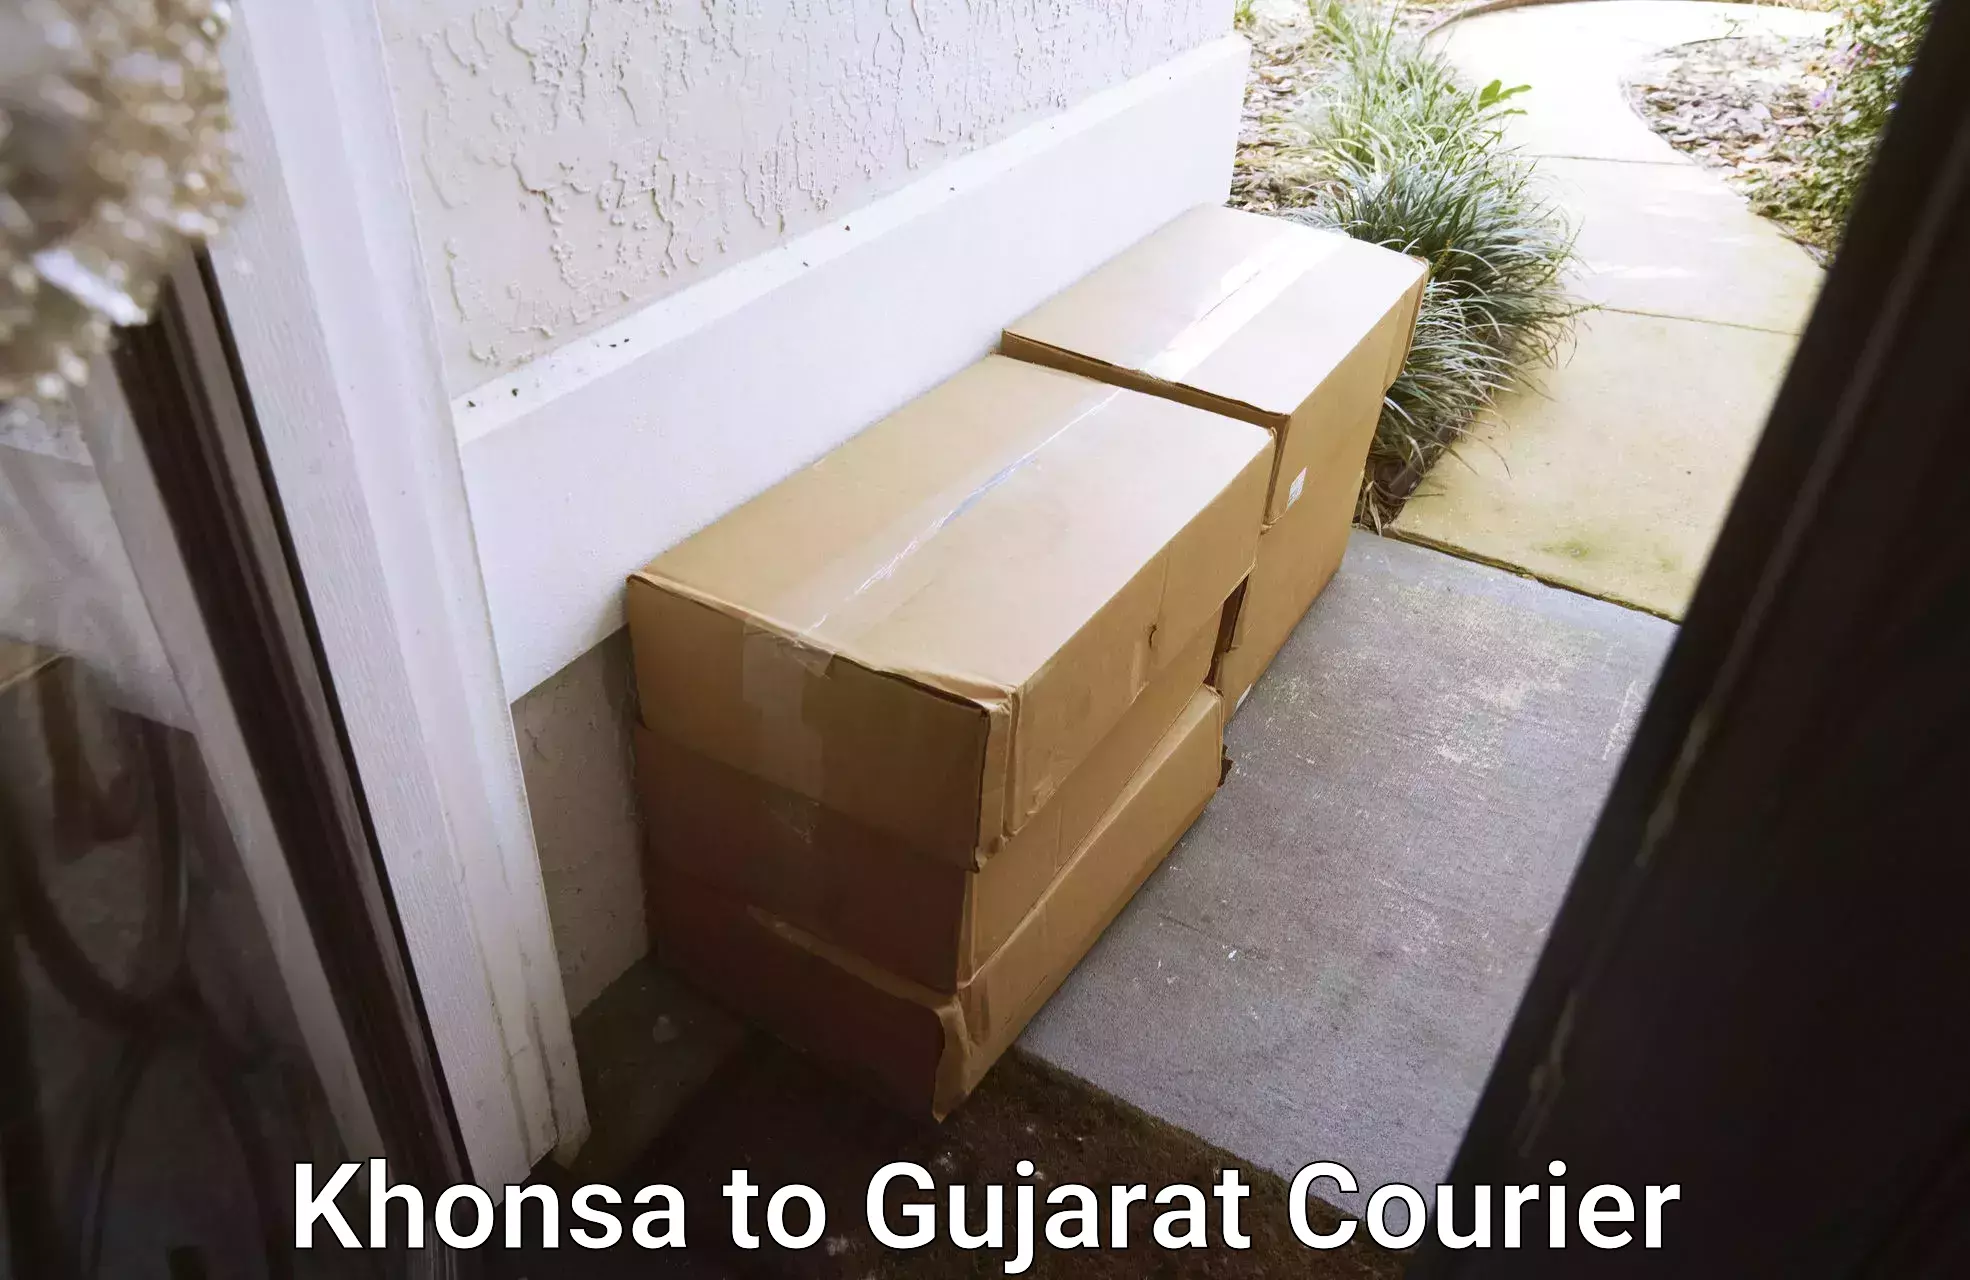 Global shipping networks Khonsa to Jamnagar